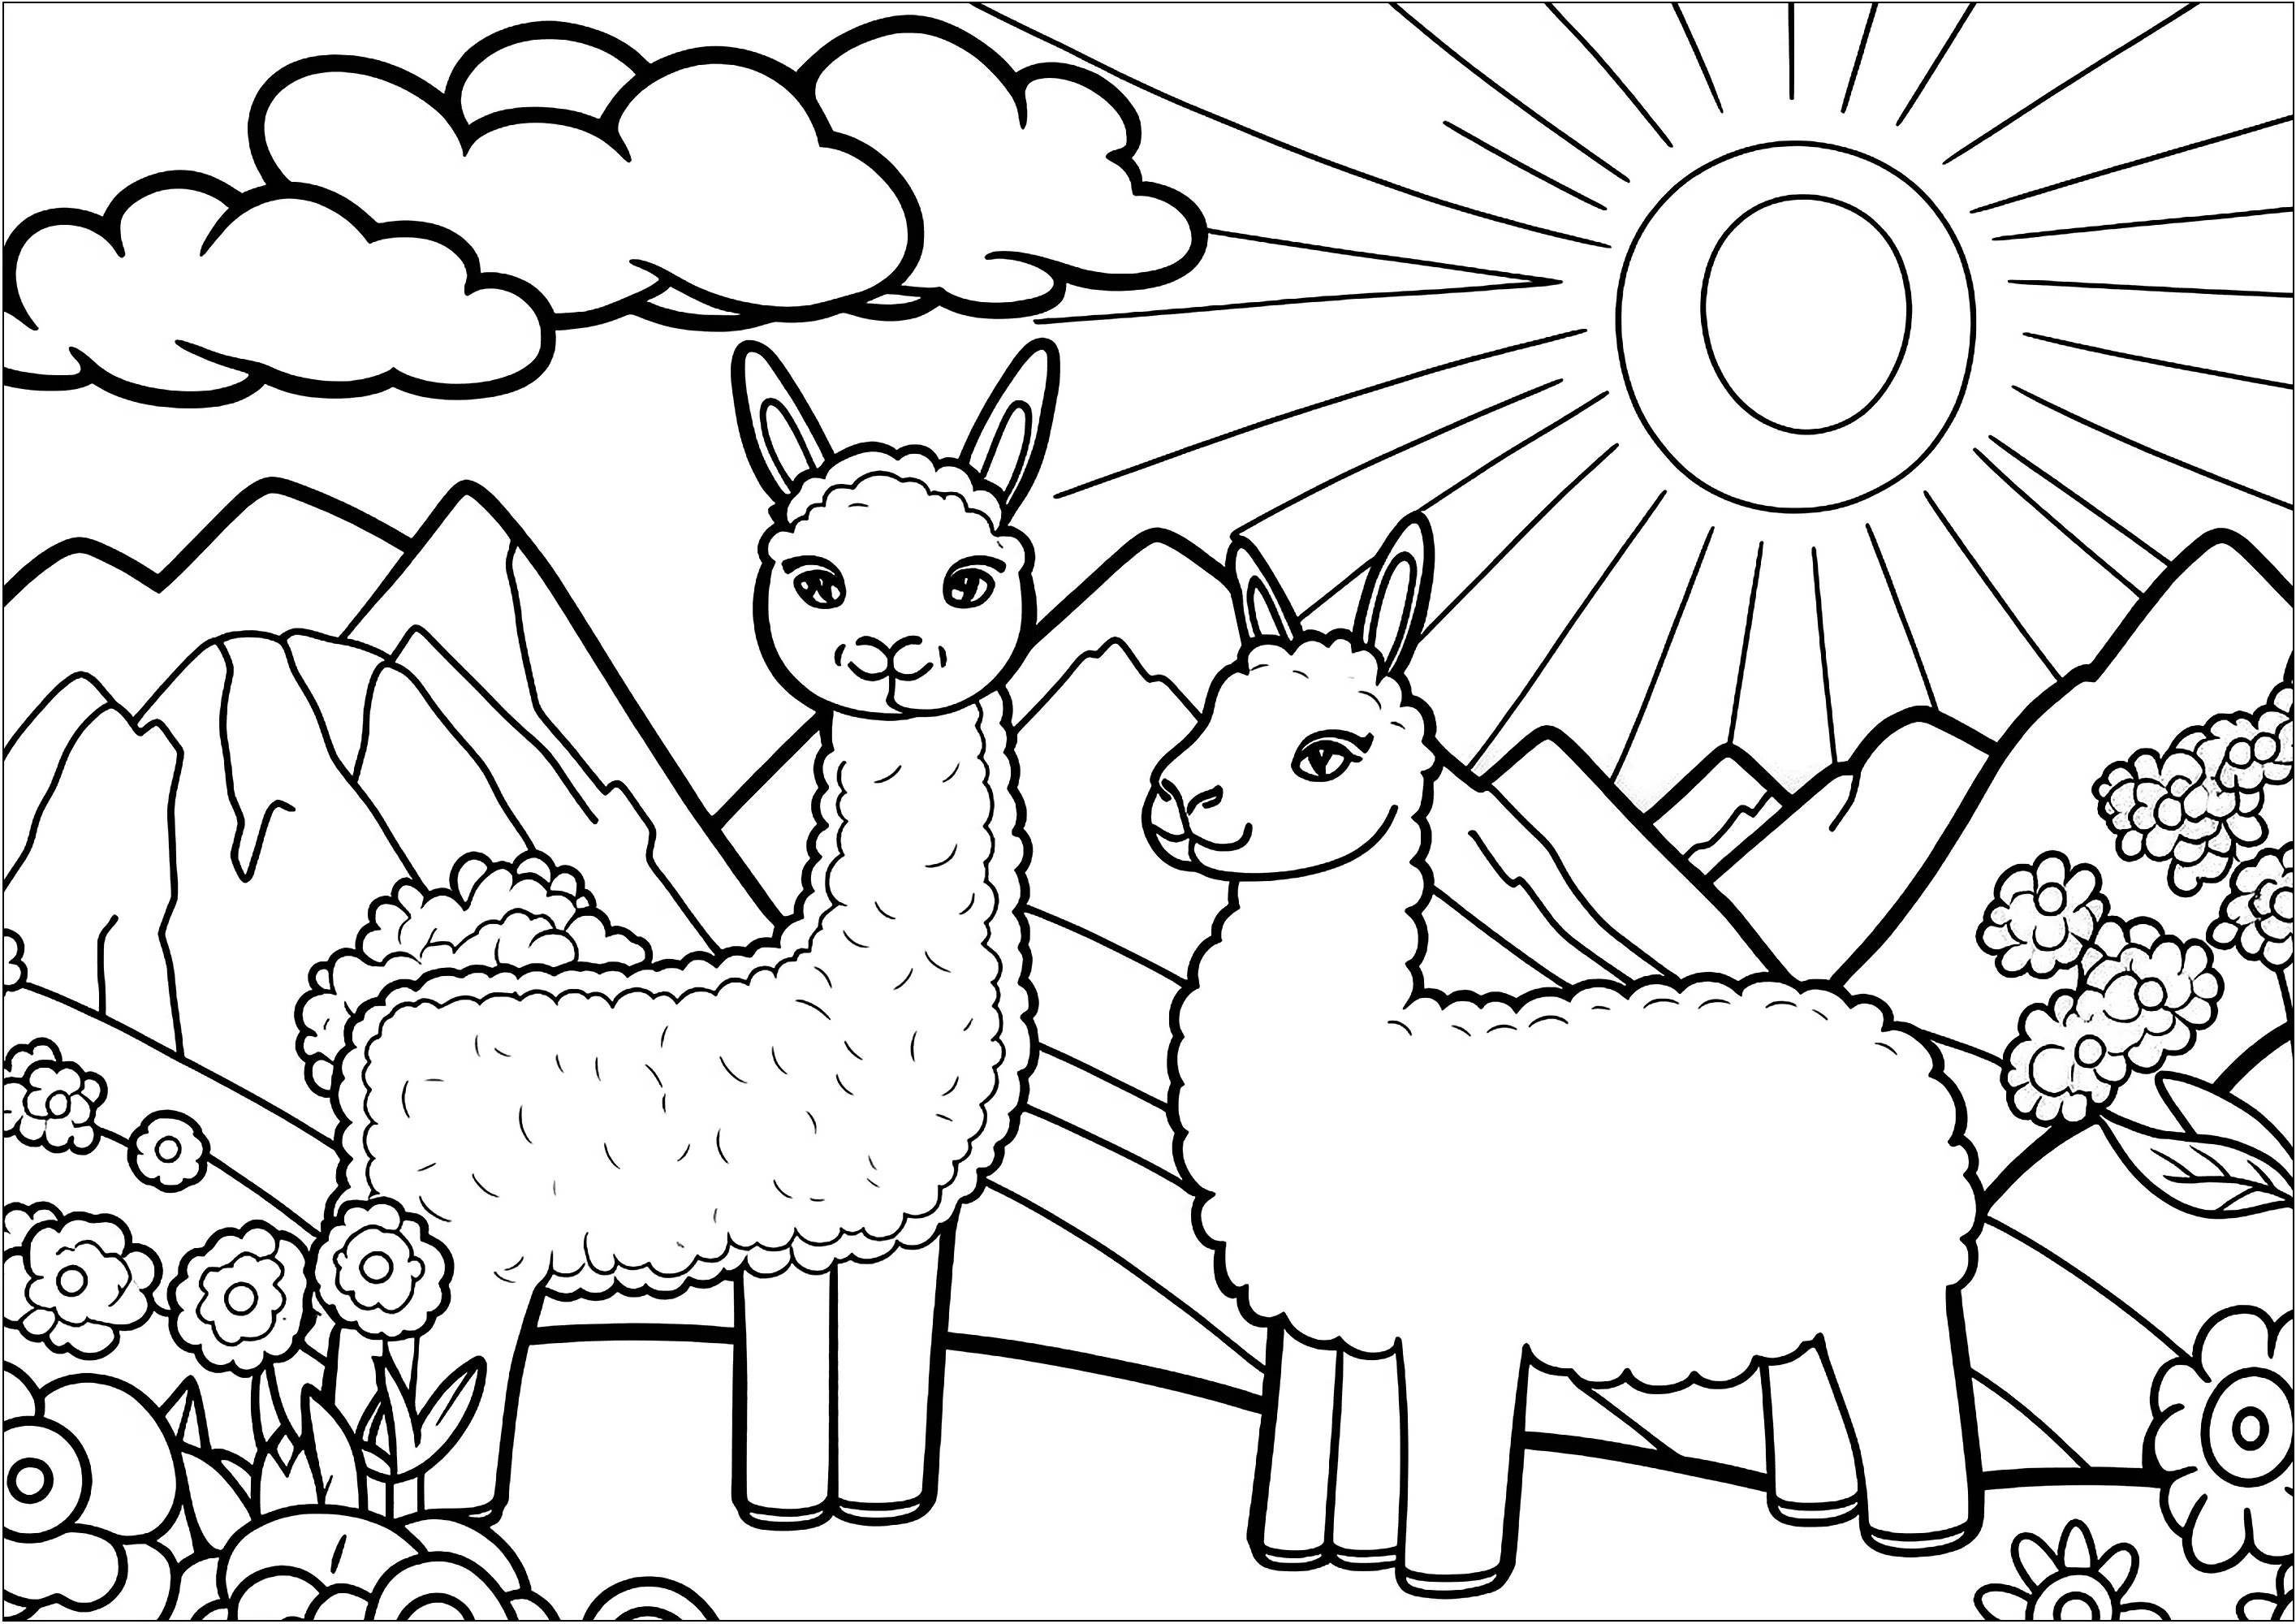 Deux jolis lamas. Un joli coloriage avec deux lamas, mais aussi de belles montagnes, un soleil et des nuages, ainsi que quelques fleurs